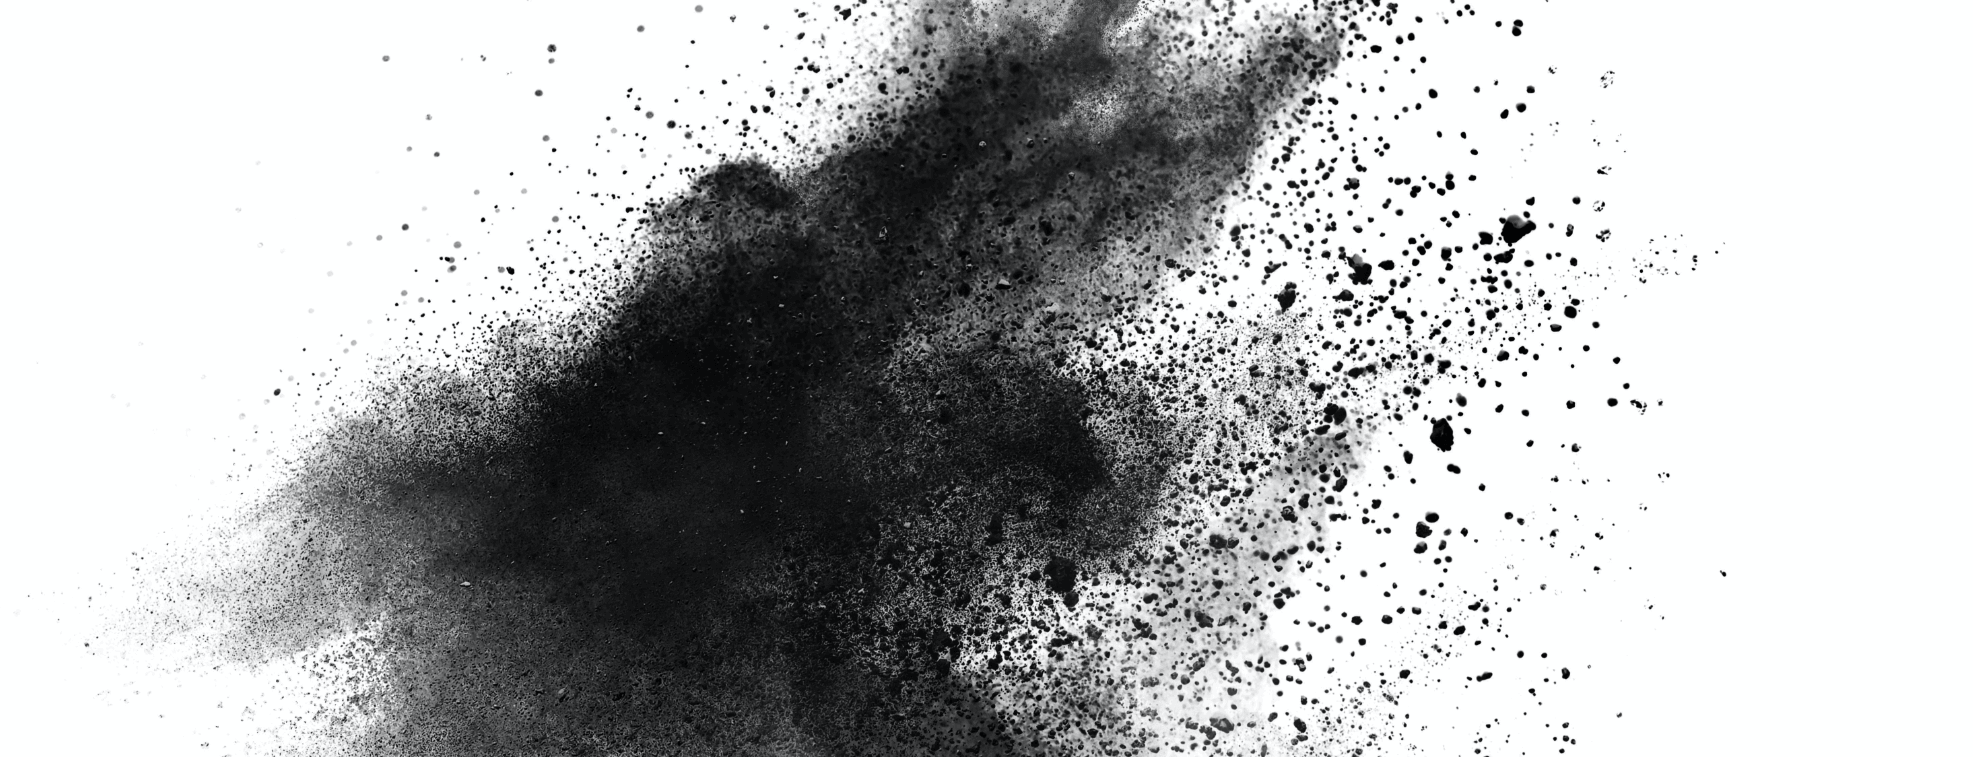 A splash of black color